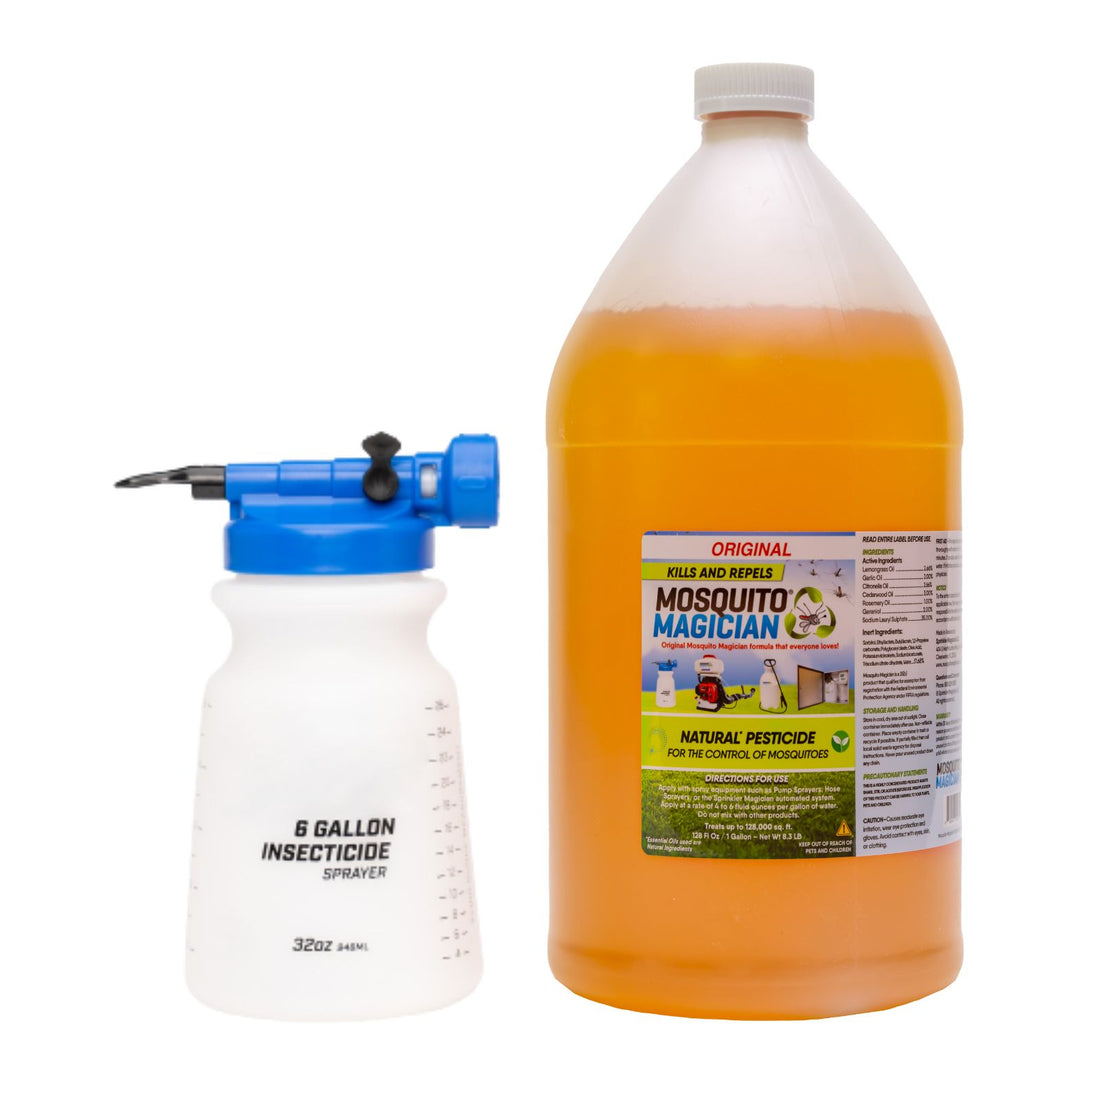 Hose Sprayer + 1 Gallon Mosquito Killer &amp; Repellent Combo